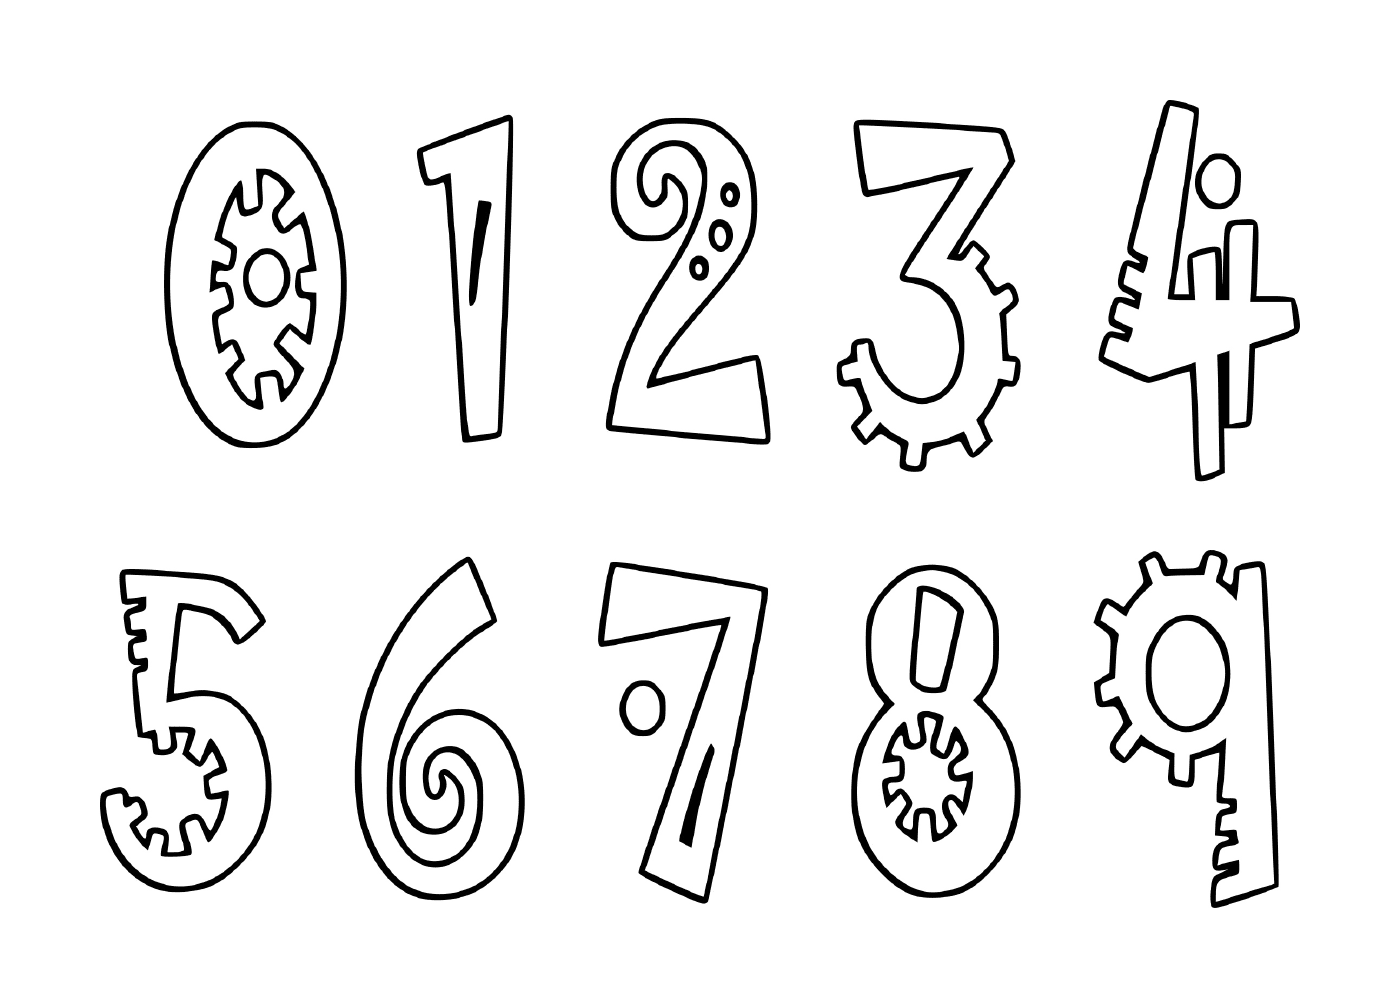   Ensemble de chiffres de zéro à neuf dessinés à l'encre noire 